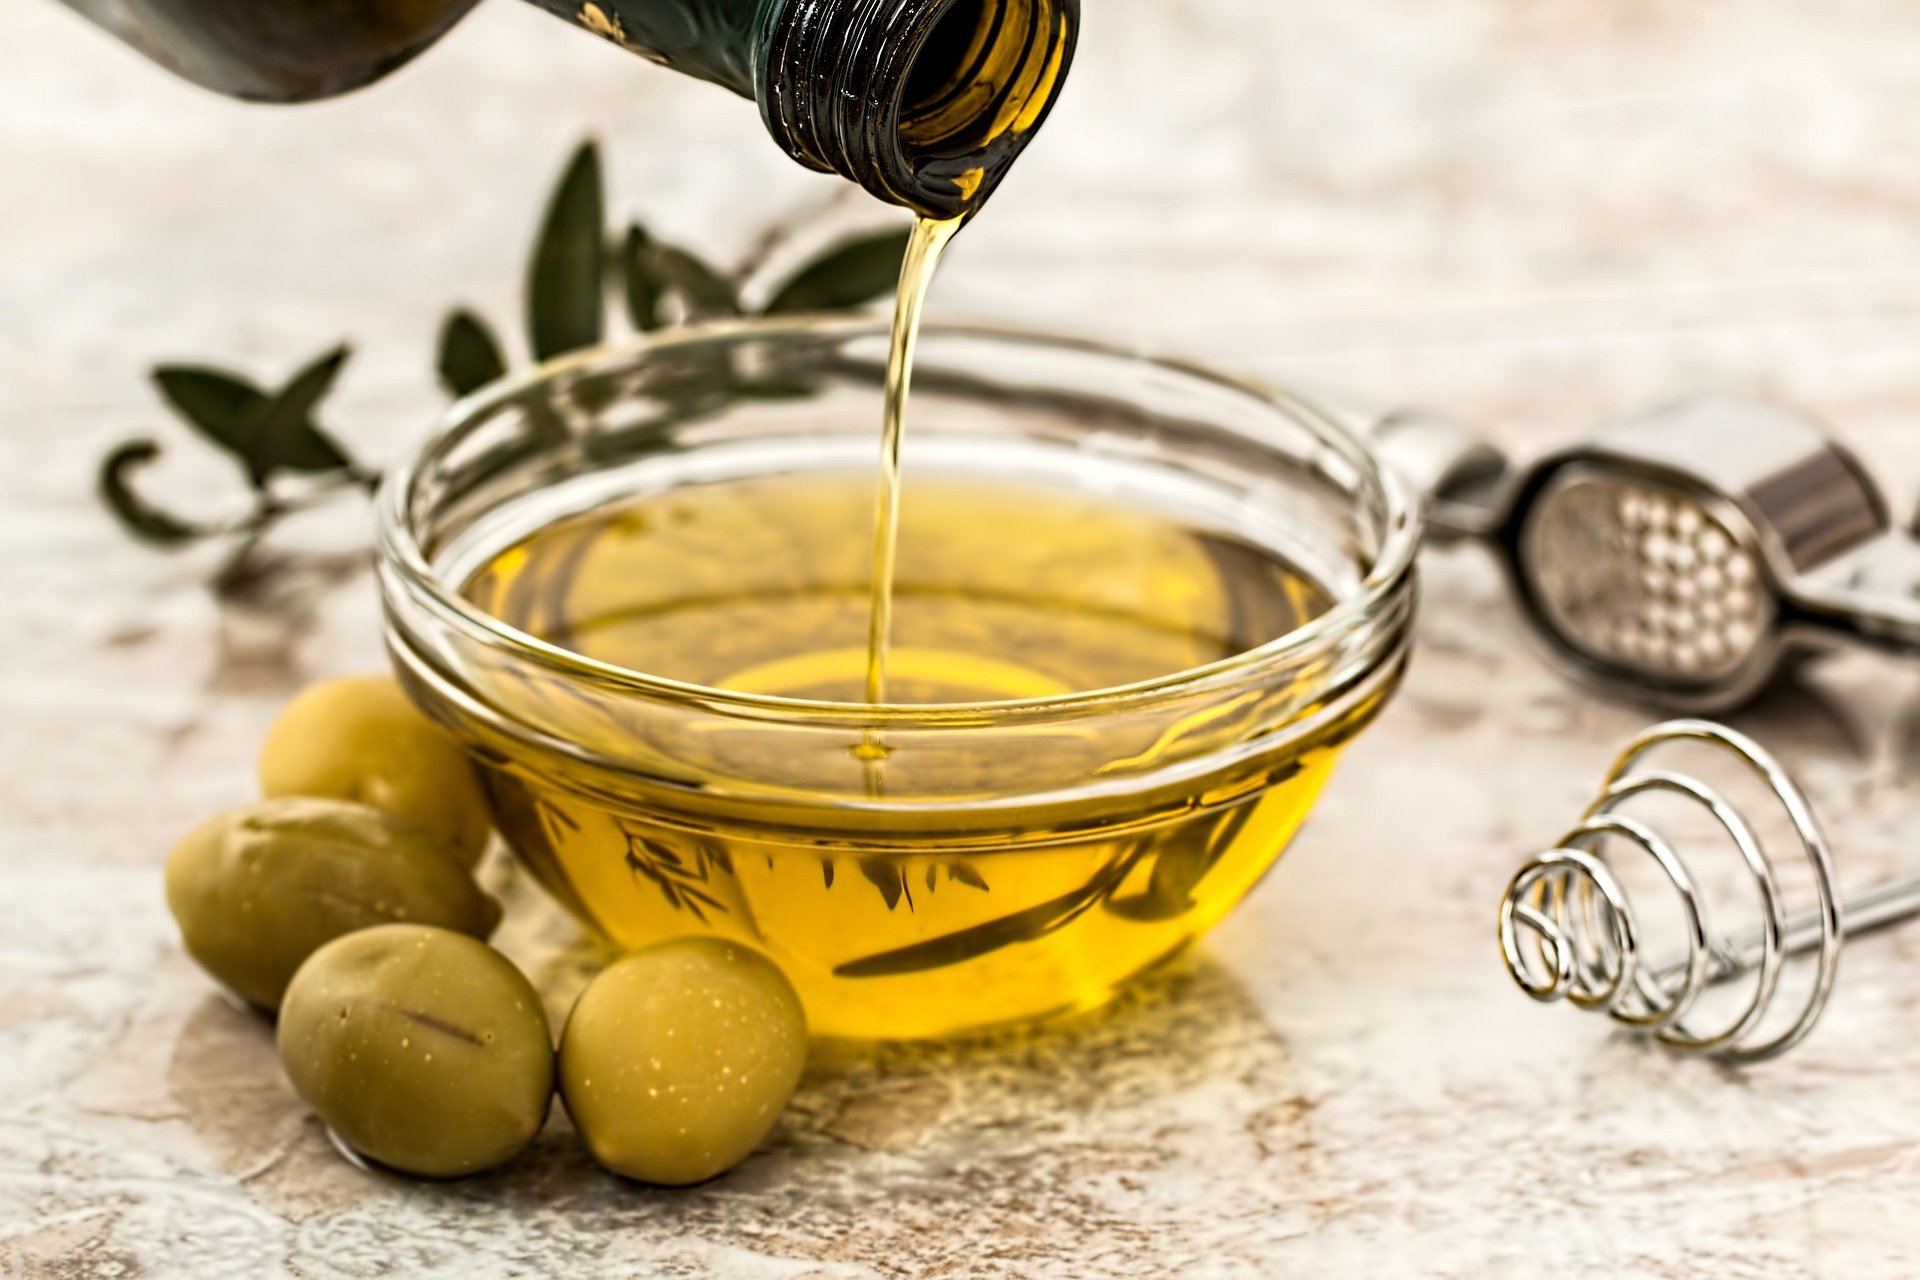 Maslinovo ulje talijanske tvrtke